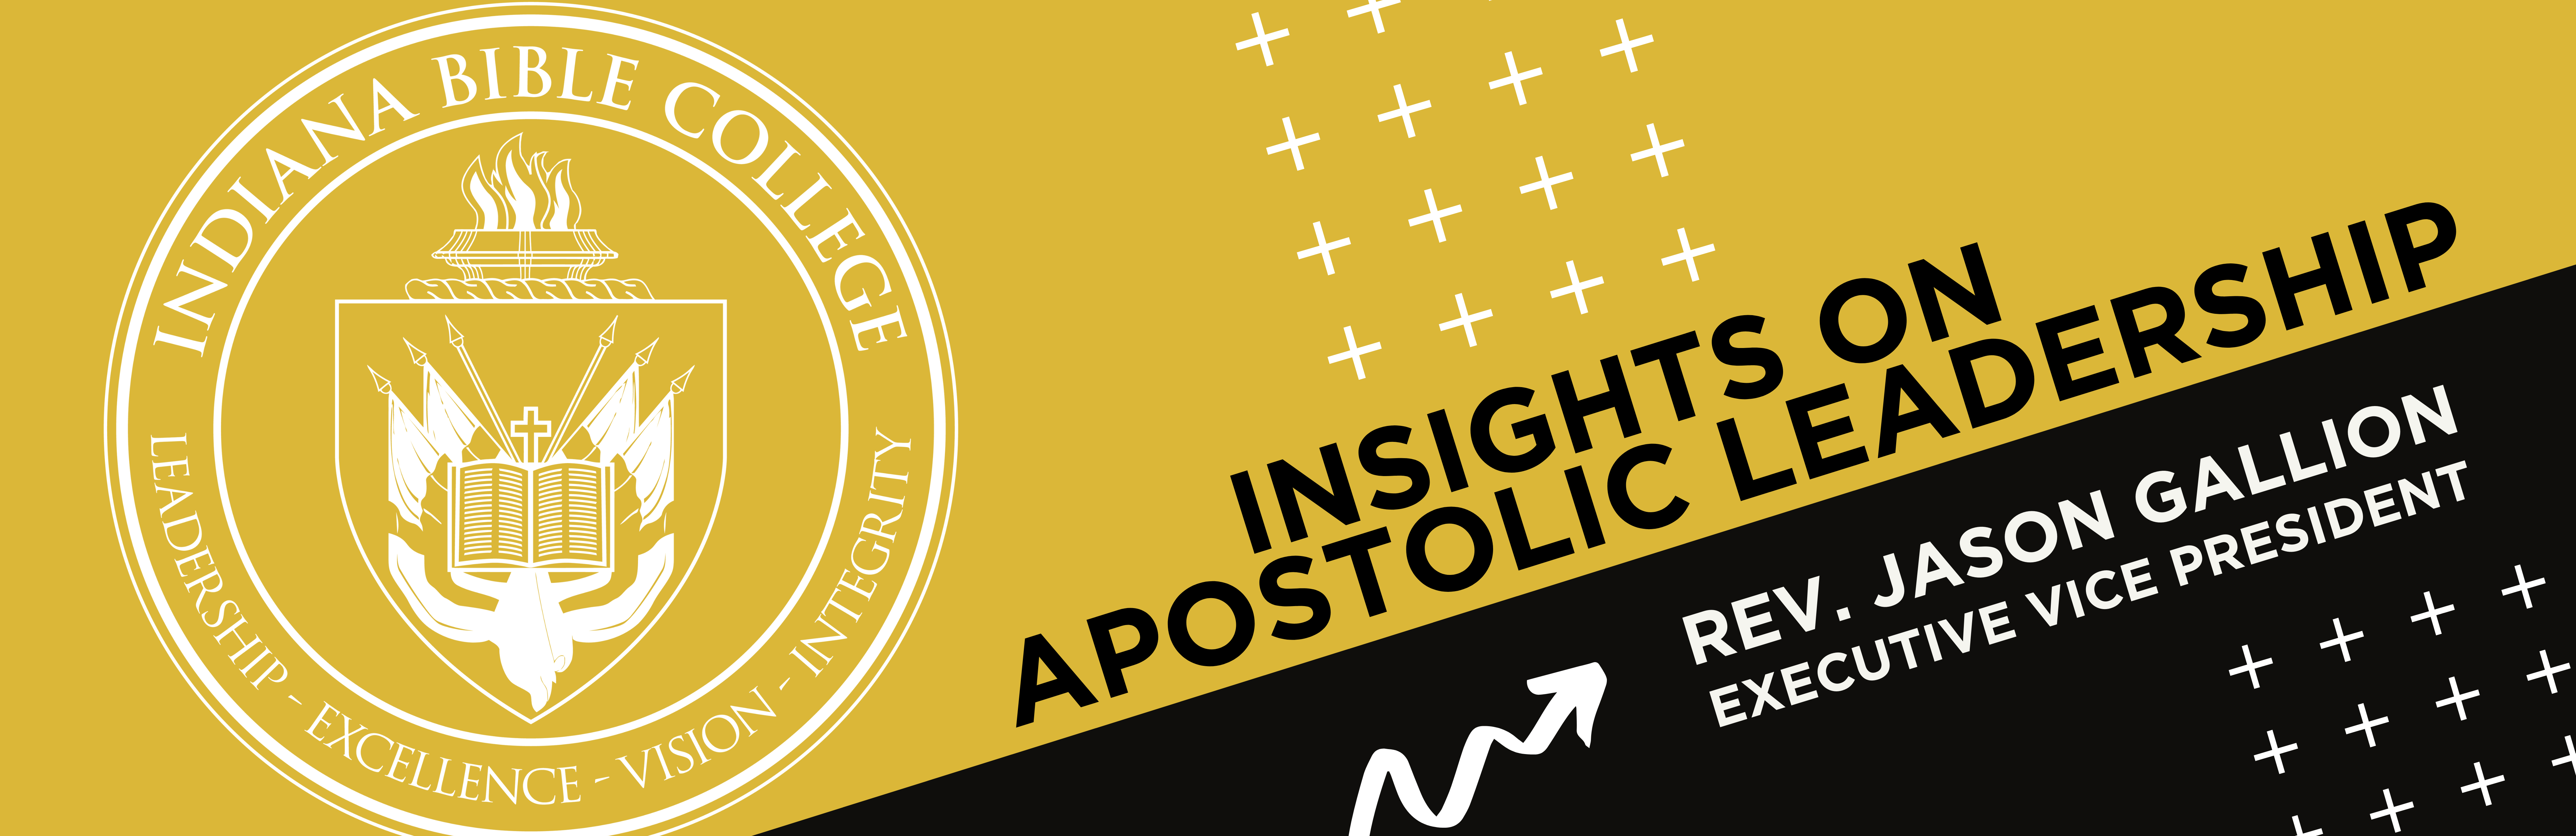 Insights on Apostolic Leadership - Jason Gallion